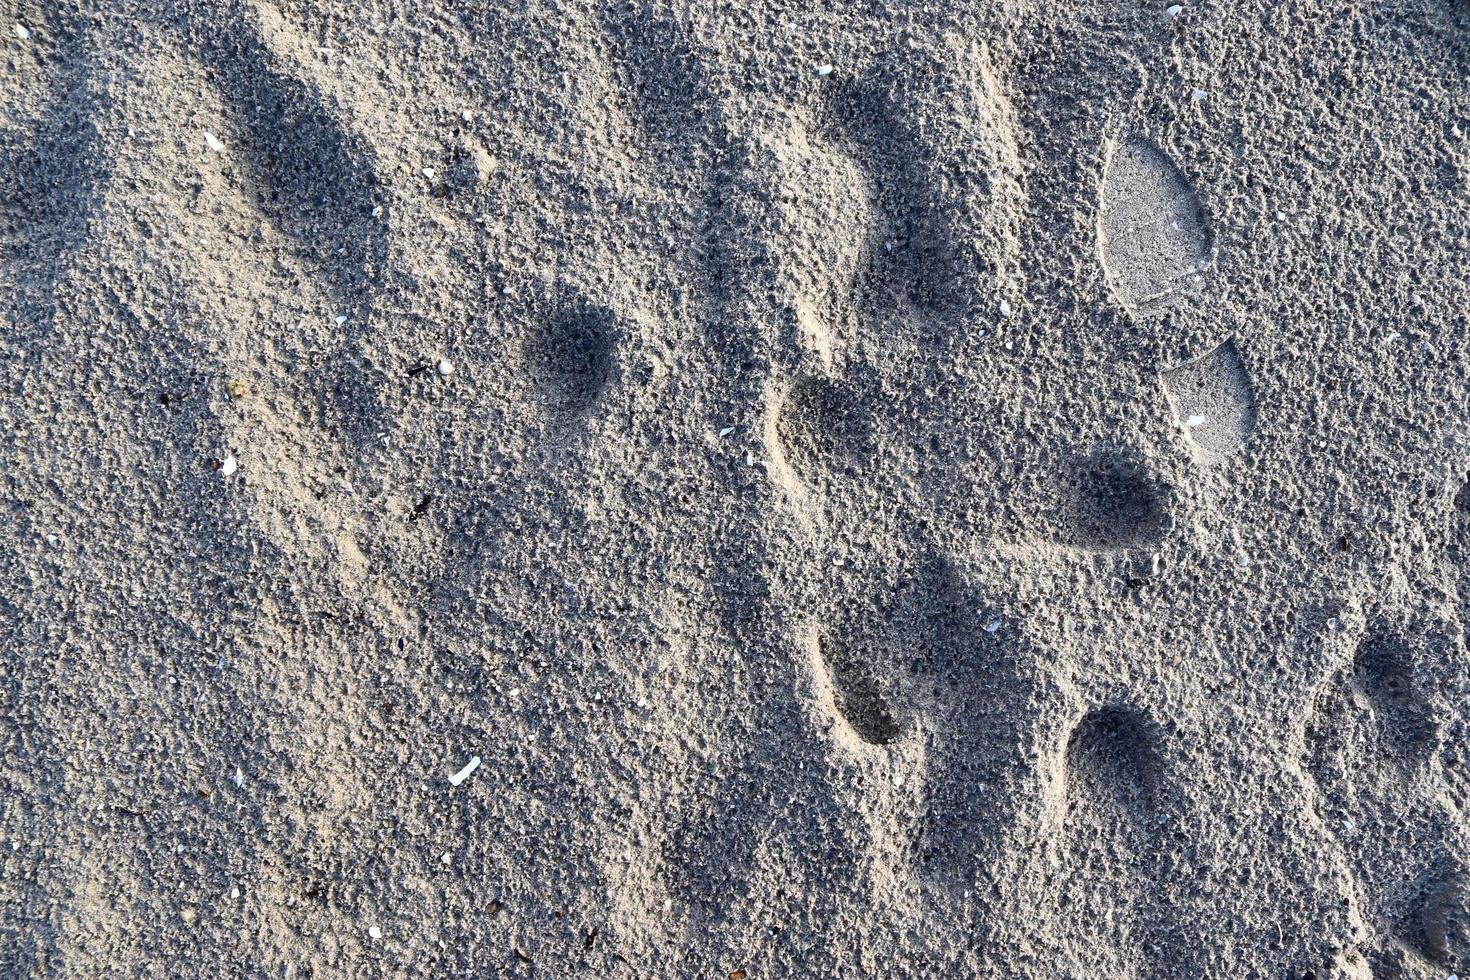 gedetailleerd close-up zicht op zand op een strand aan de Oostzee foto